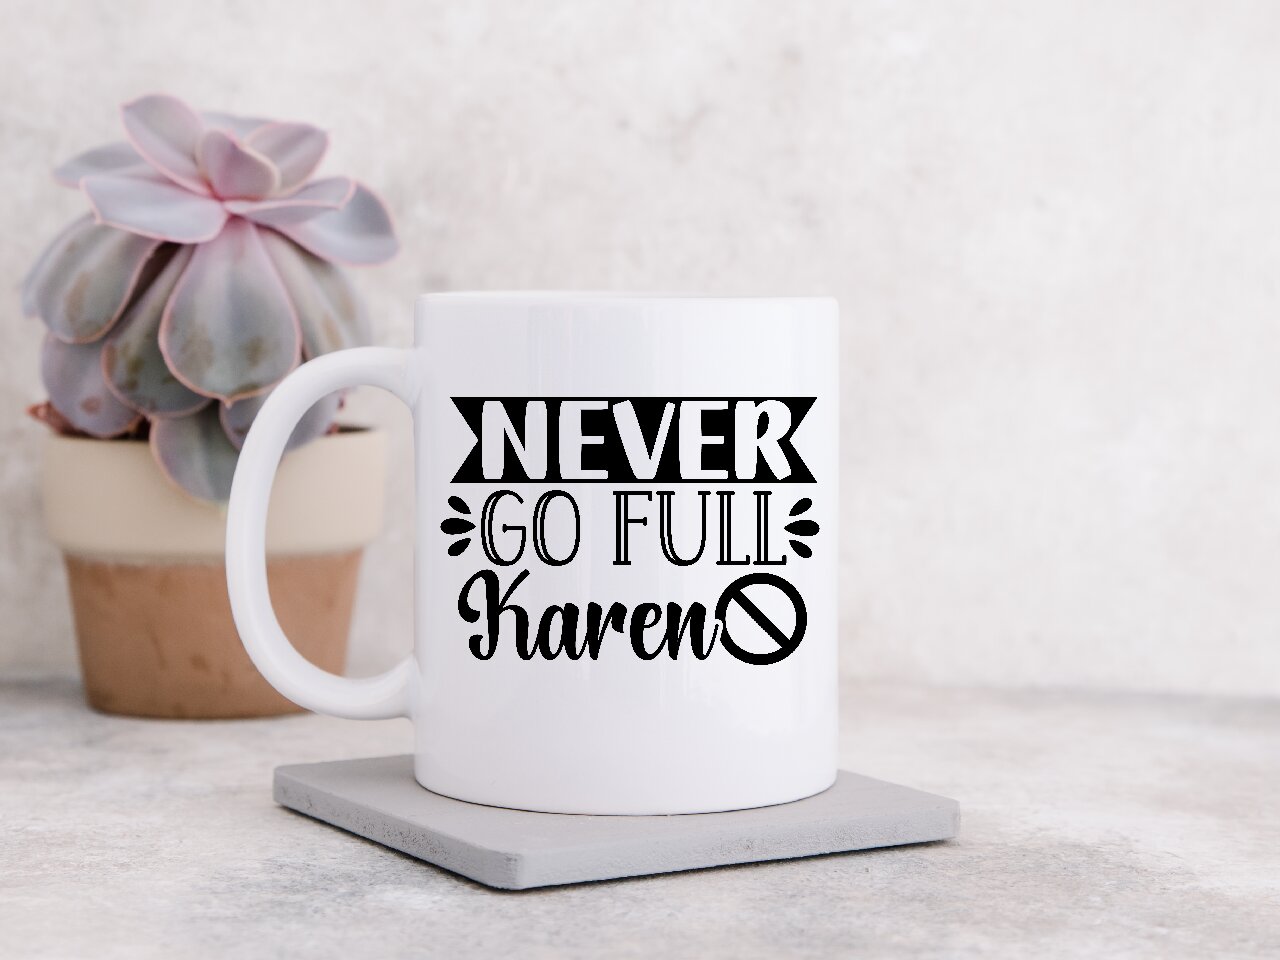 Never Go Full Karen - Coffee Mug